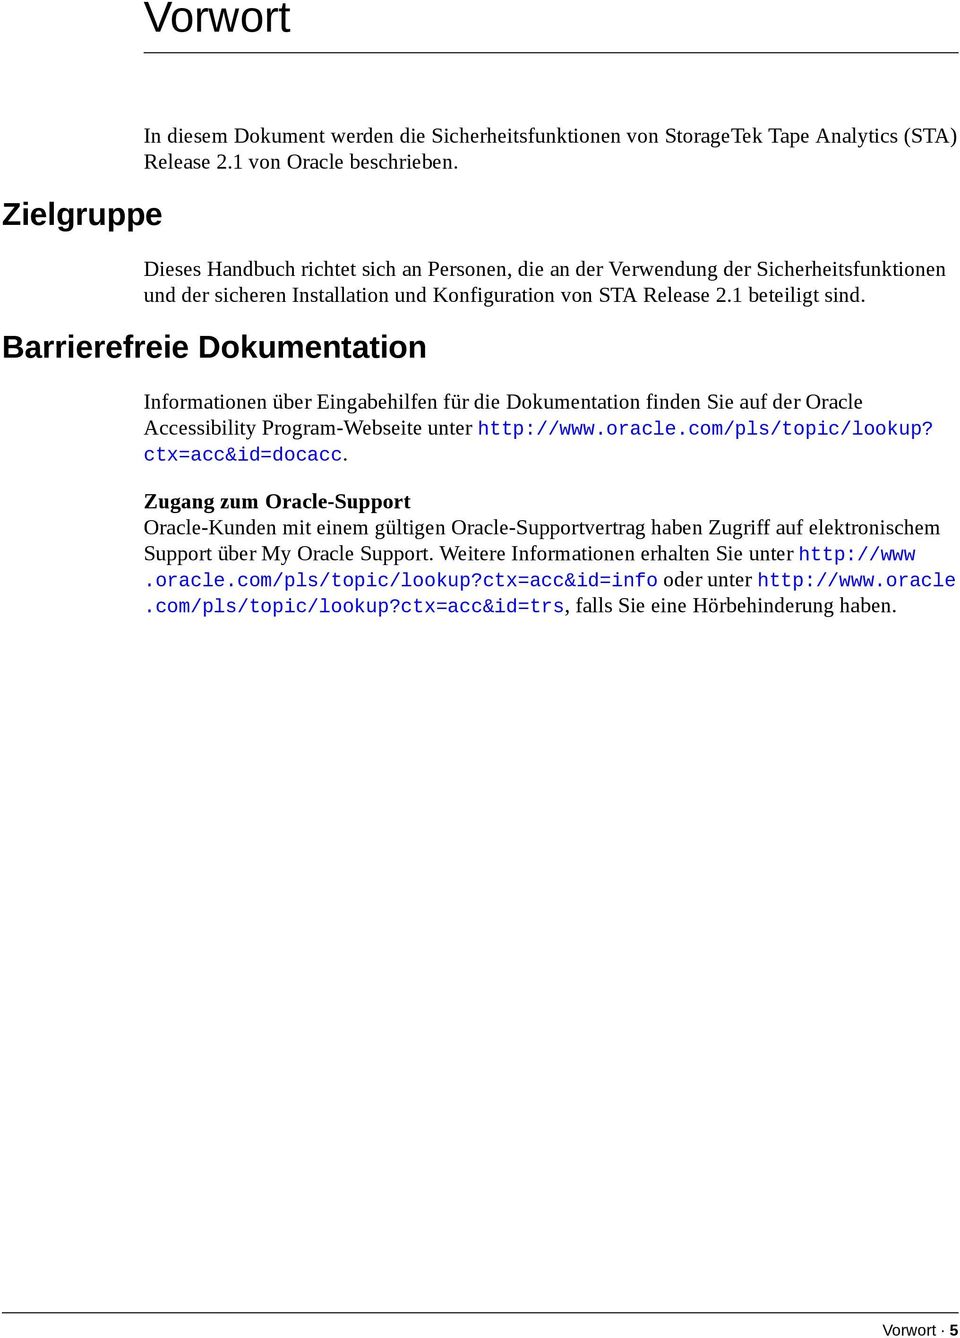 Barrierefreie Dokumentation Informationen über Eingabehilfen für die Dokumentation finden Sie auf der Oracle Accessibility Program-Webseite unter http://www.oracle.com/pls/topic/lookup?